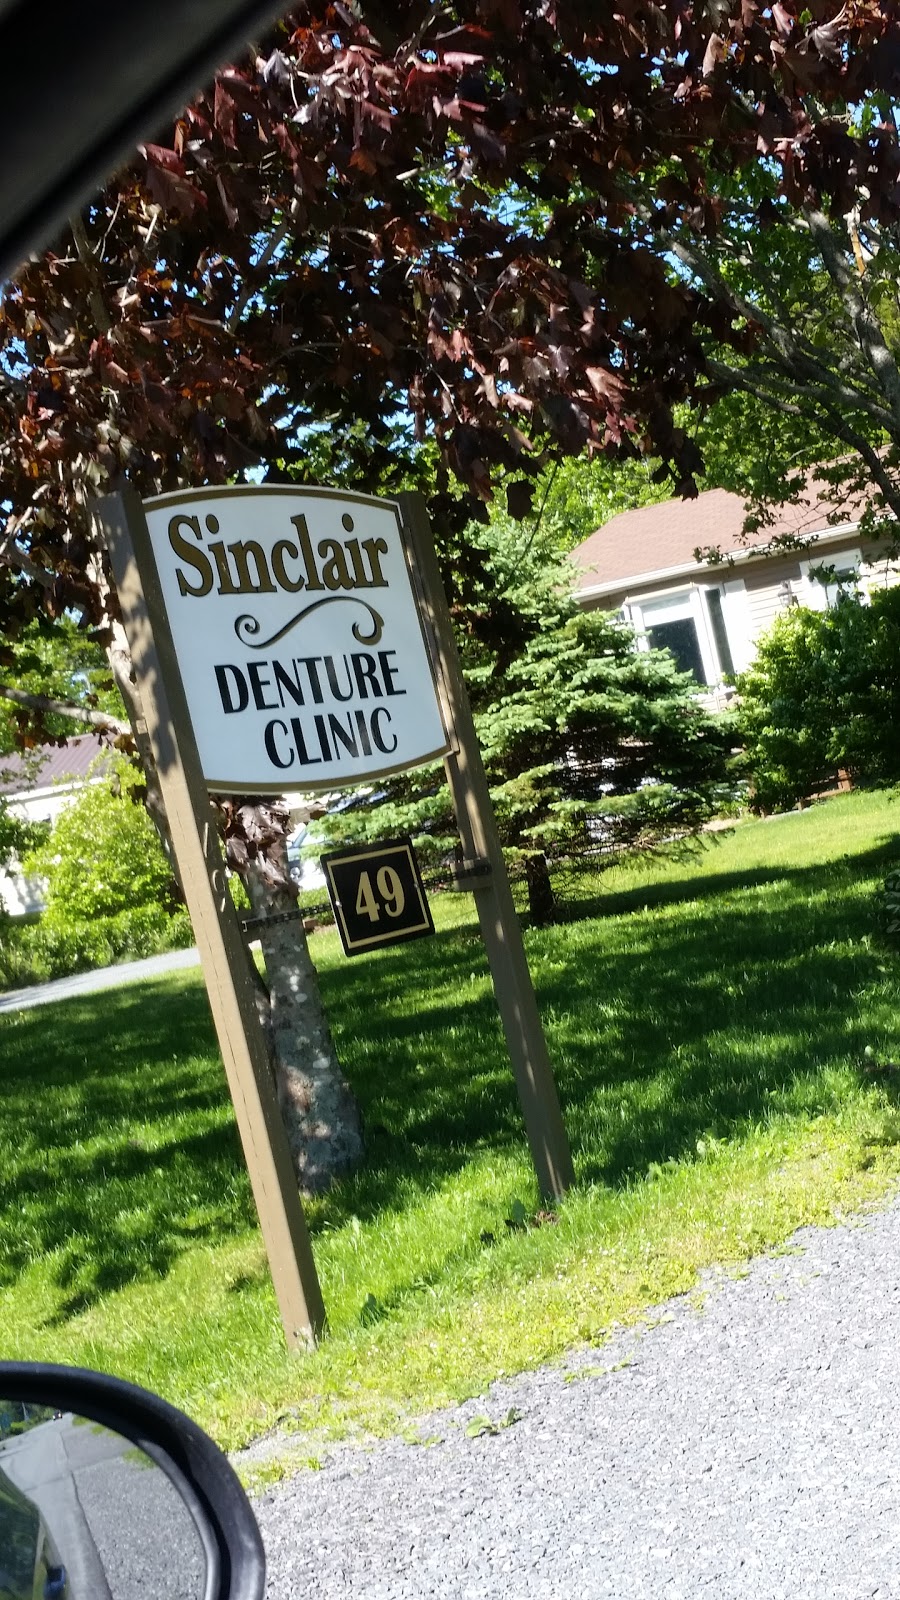 Sinclair Denture Clinic | dentist | 49 Bell St, Lake Echo, NS B3E 1N3, Canada | 9028293964 OR +1 902-829-3964